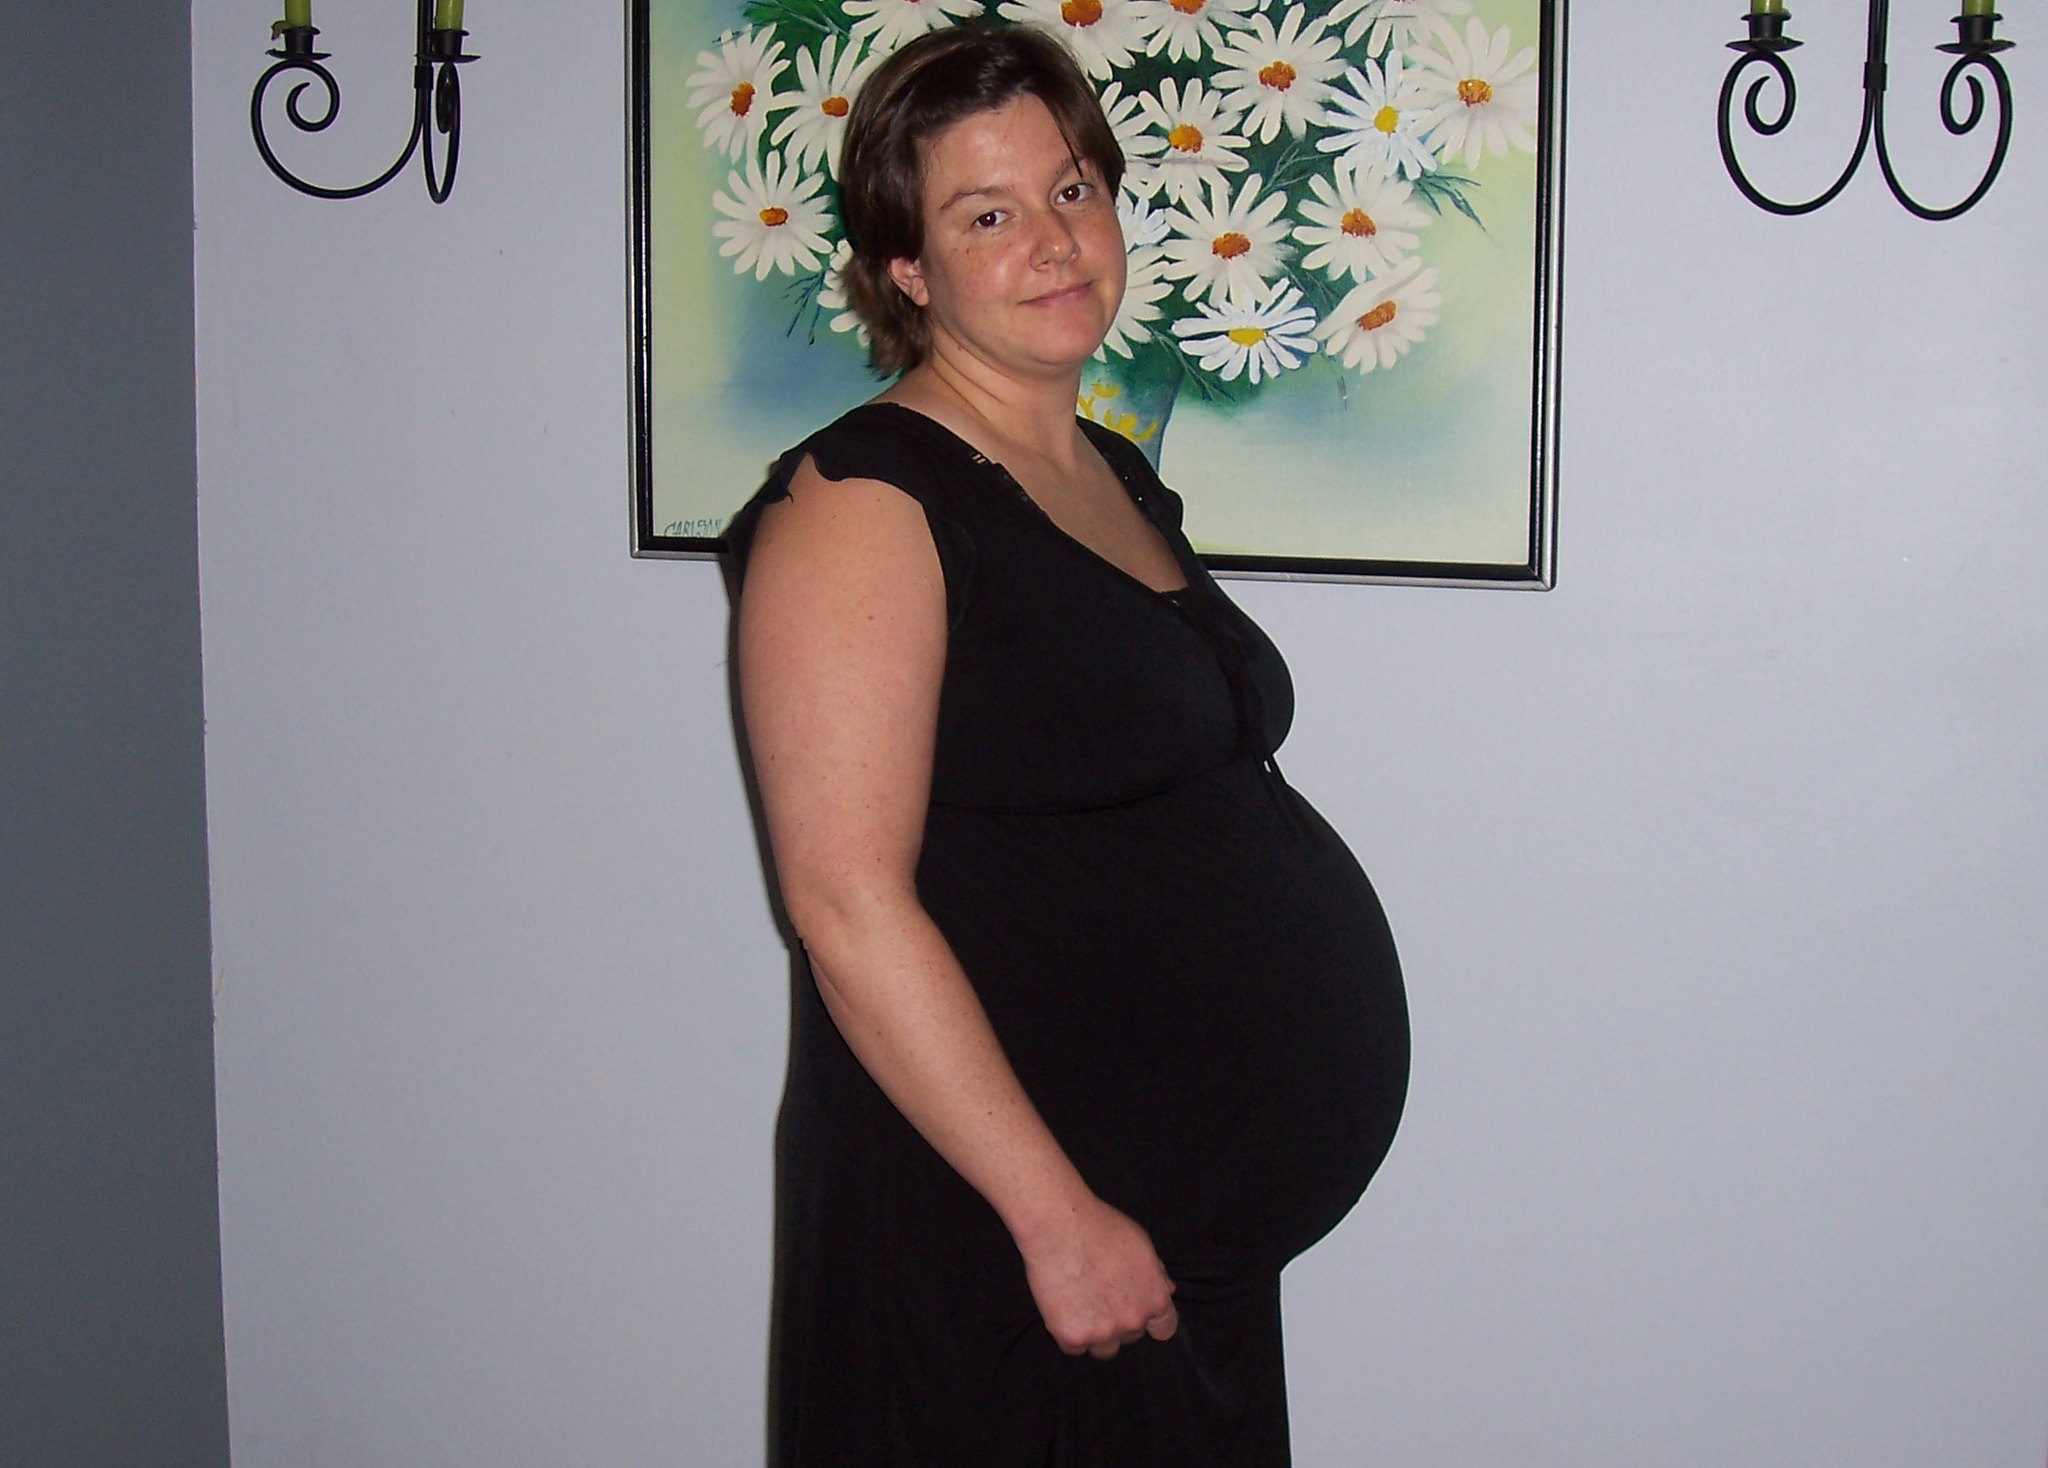 Eine schwangere Frau | Quelle: Flickr